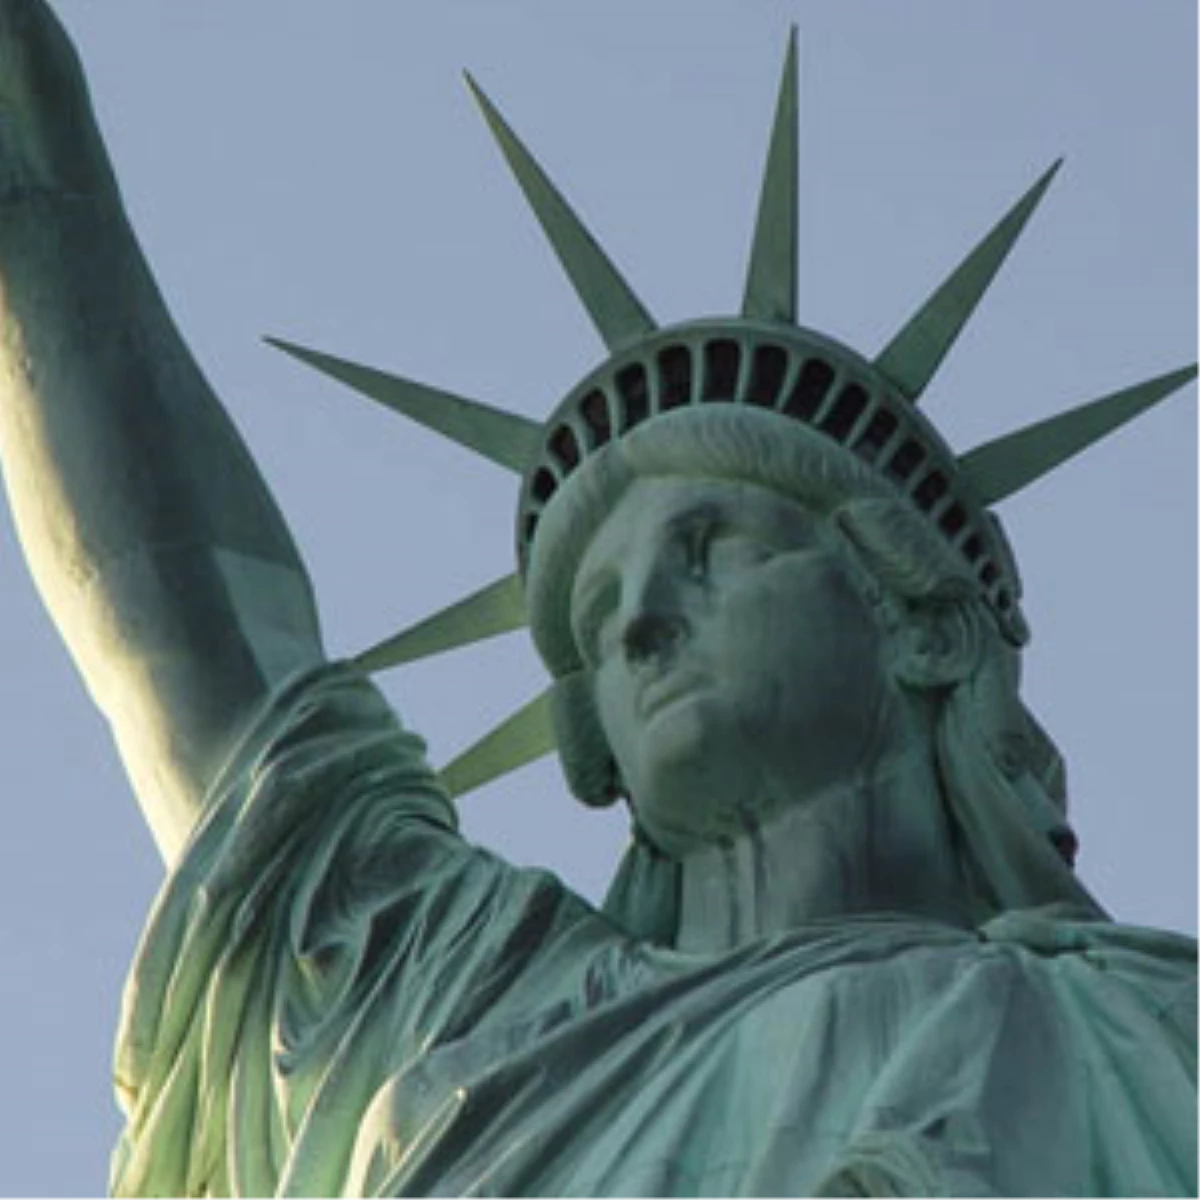 Öğretmenler Matematiği "Özgürlük Anıtı" ile Anlatacak